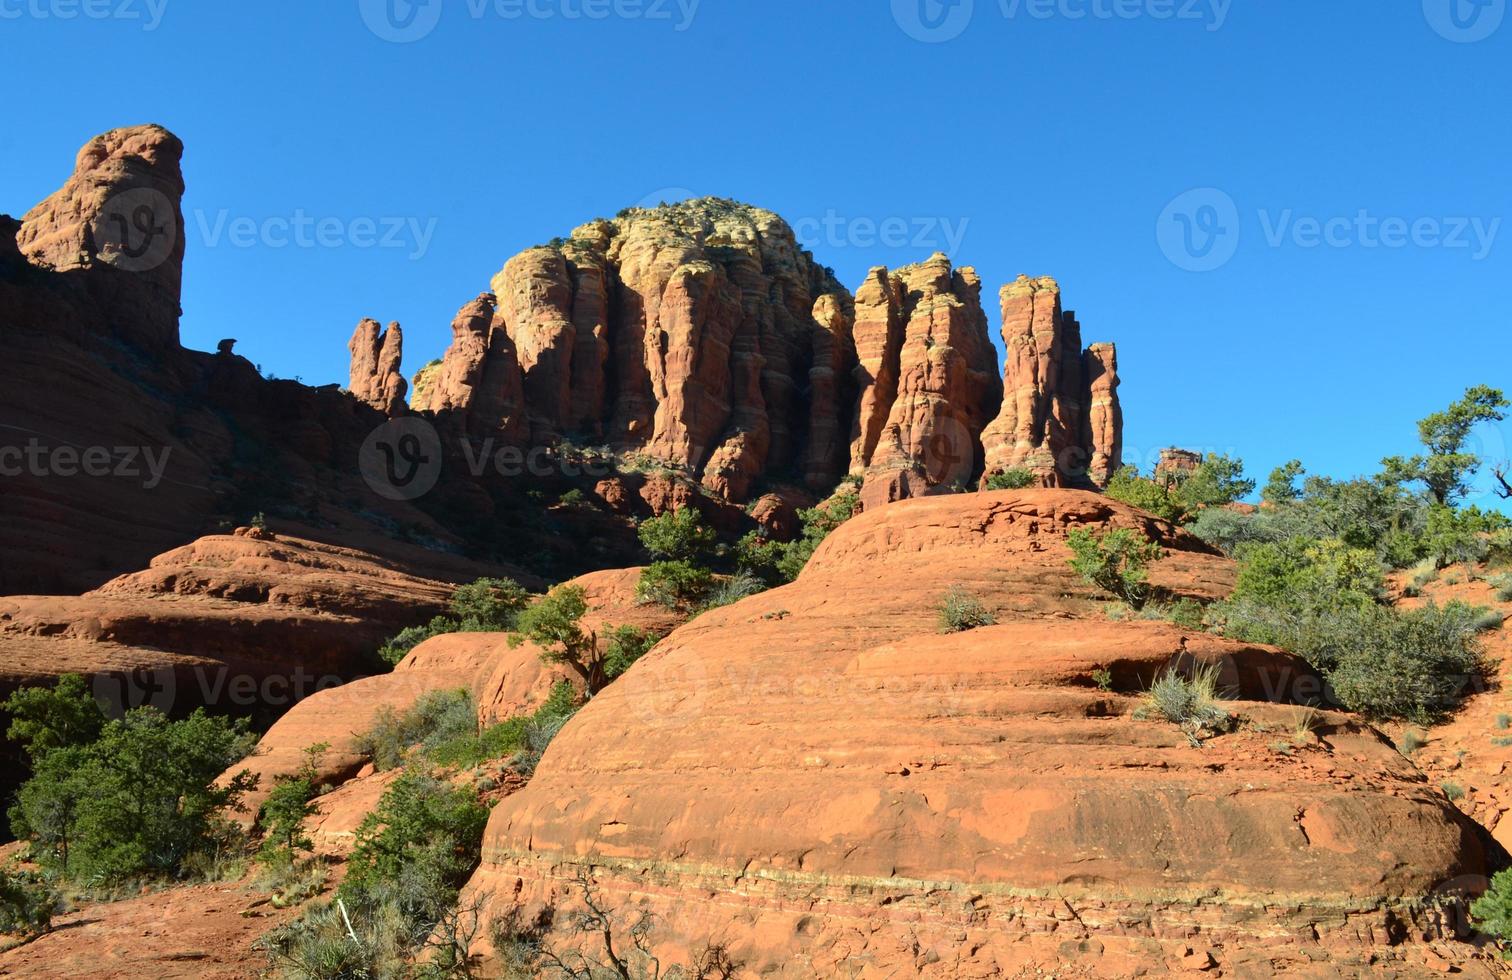 rocha vermelha em forma de sino em sedona arizona foto